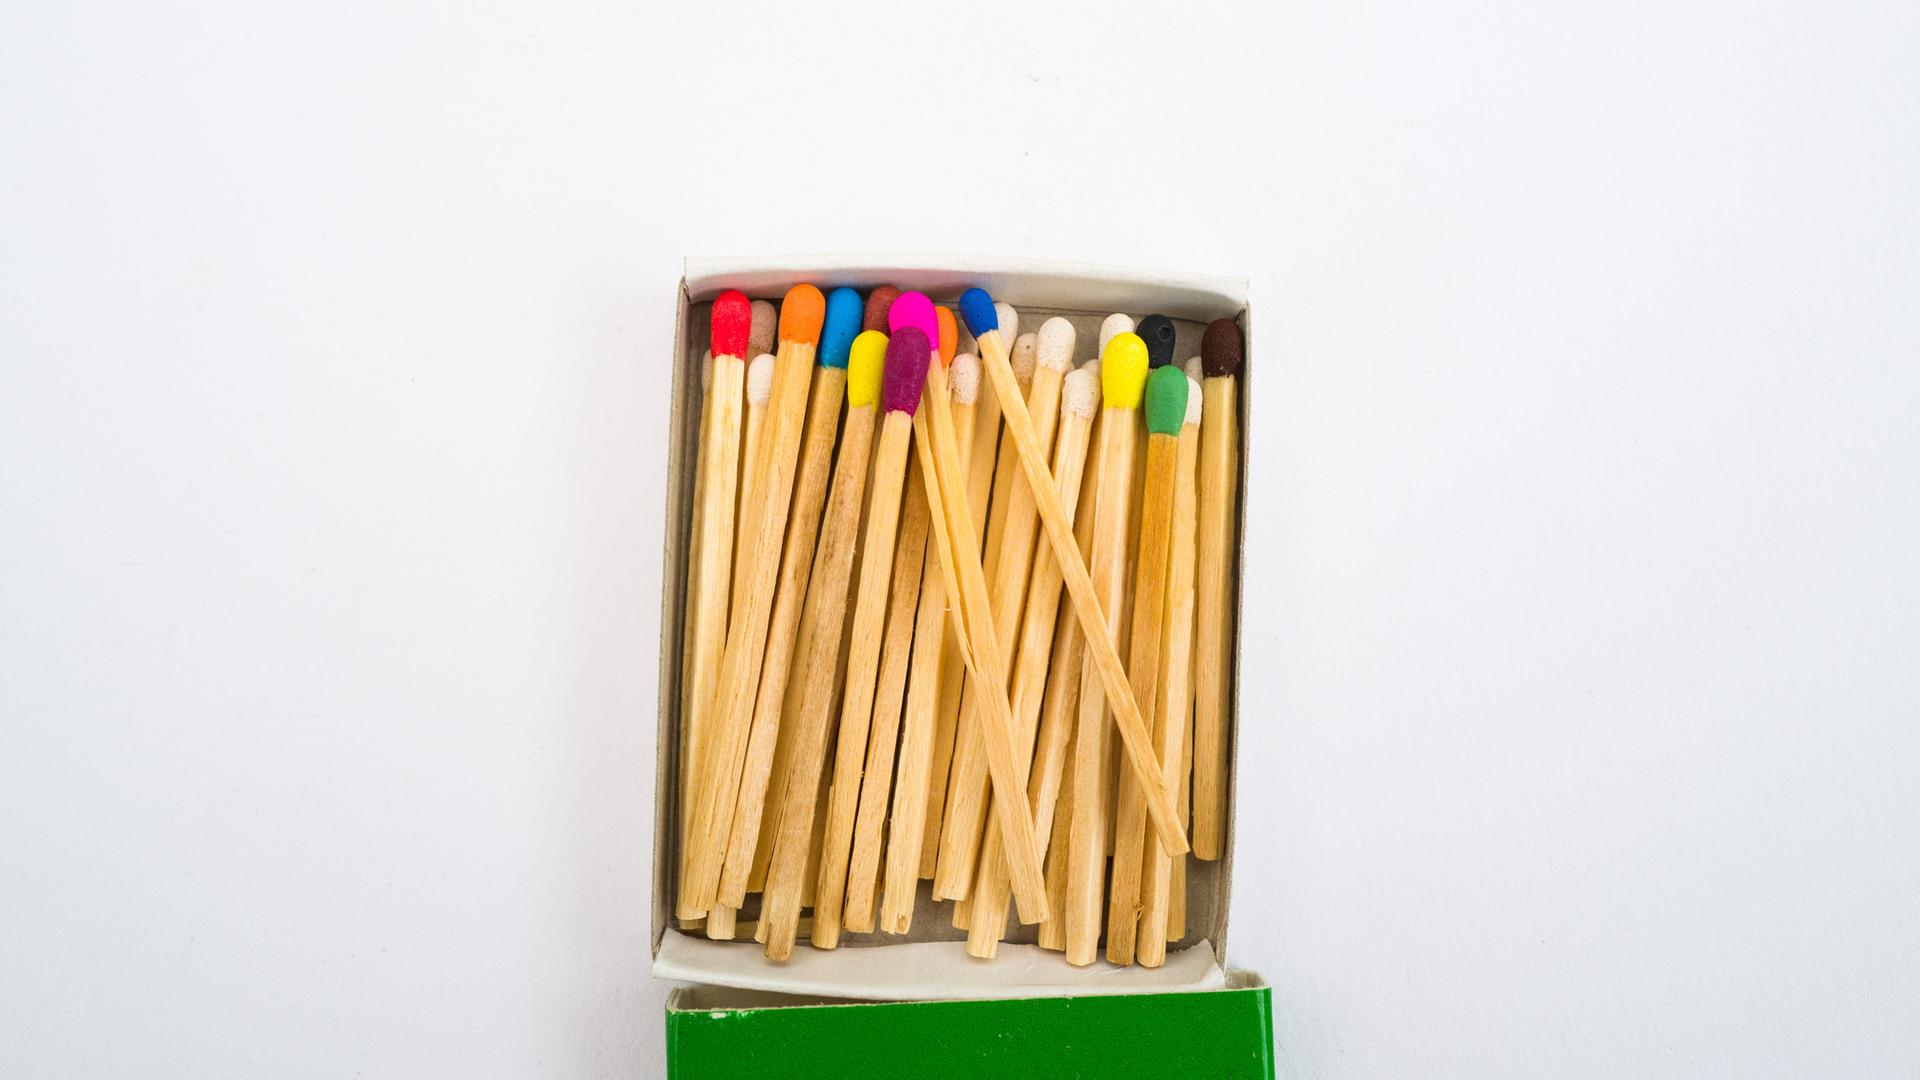 Streichhölzer mit verschiedenfarbigen Köpfen in einer geöffneten Schachtel vor hellem Hintergrund